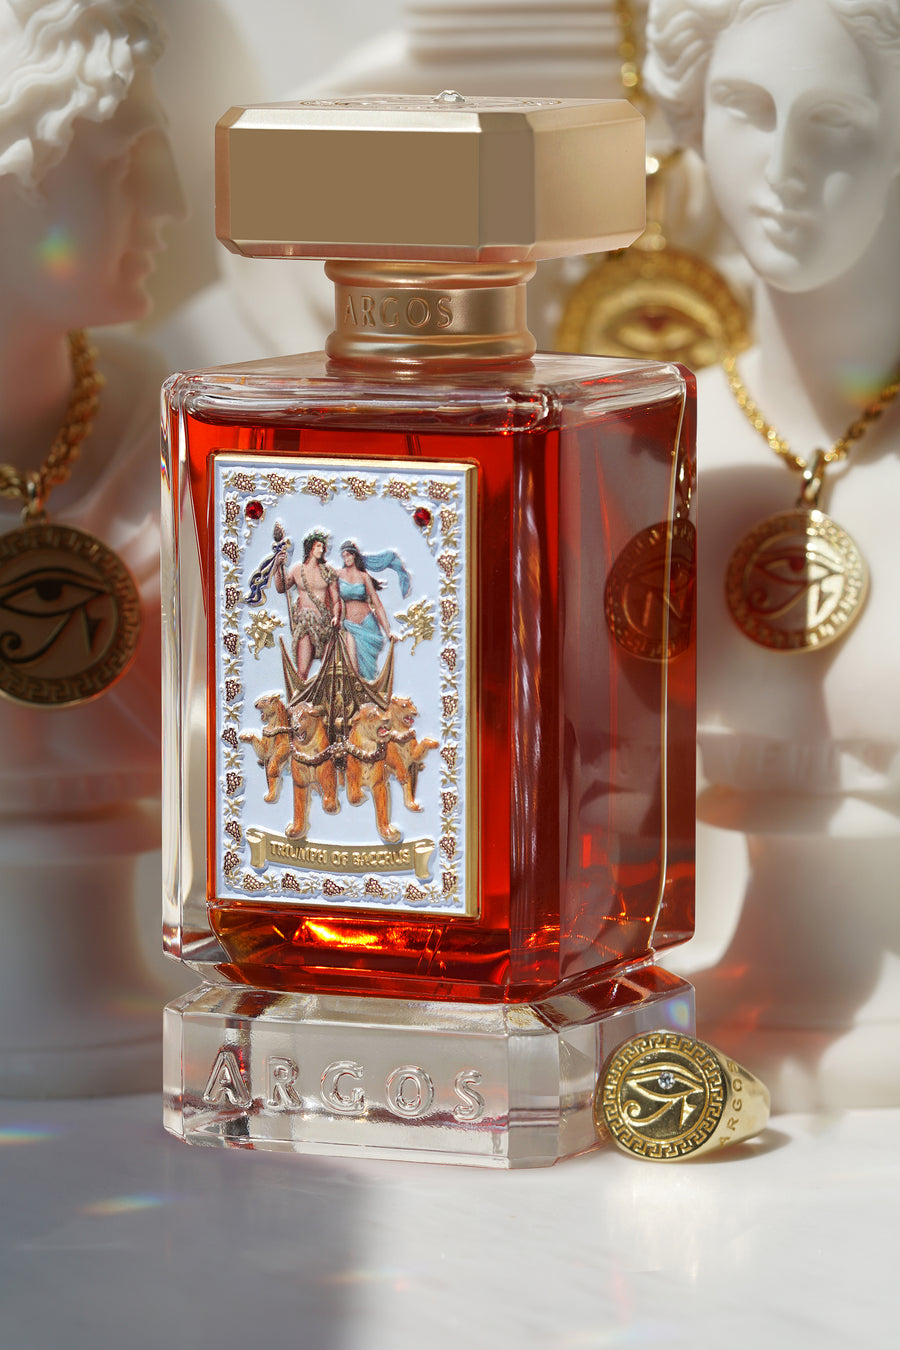 Argos TRIUMPH OF BACCHUS EXTRAIT Perfume